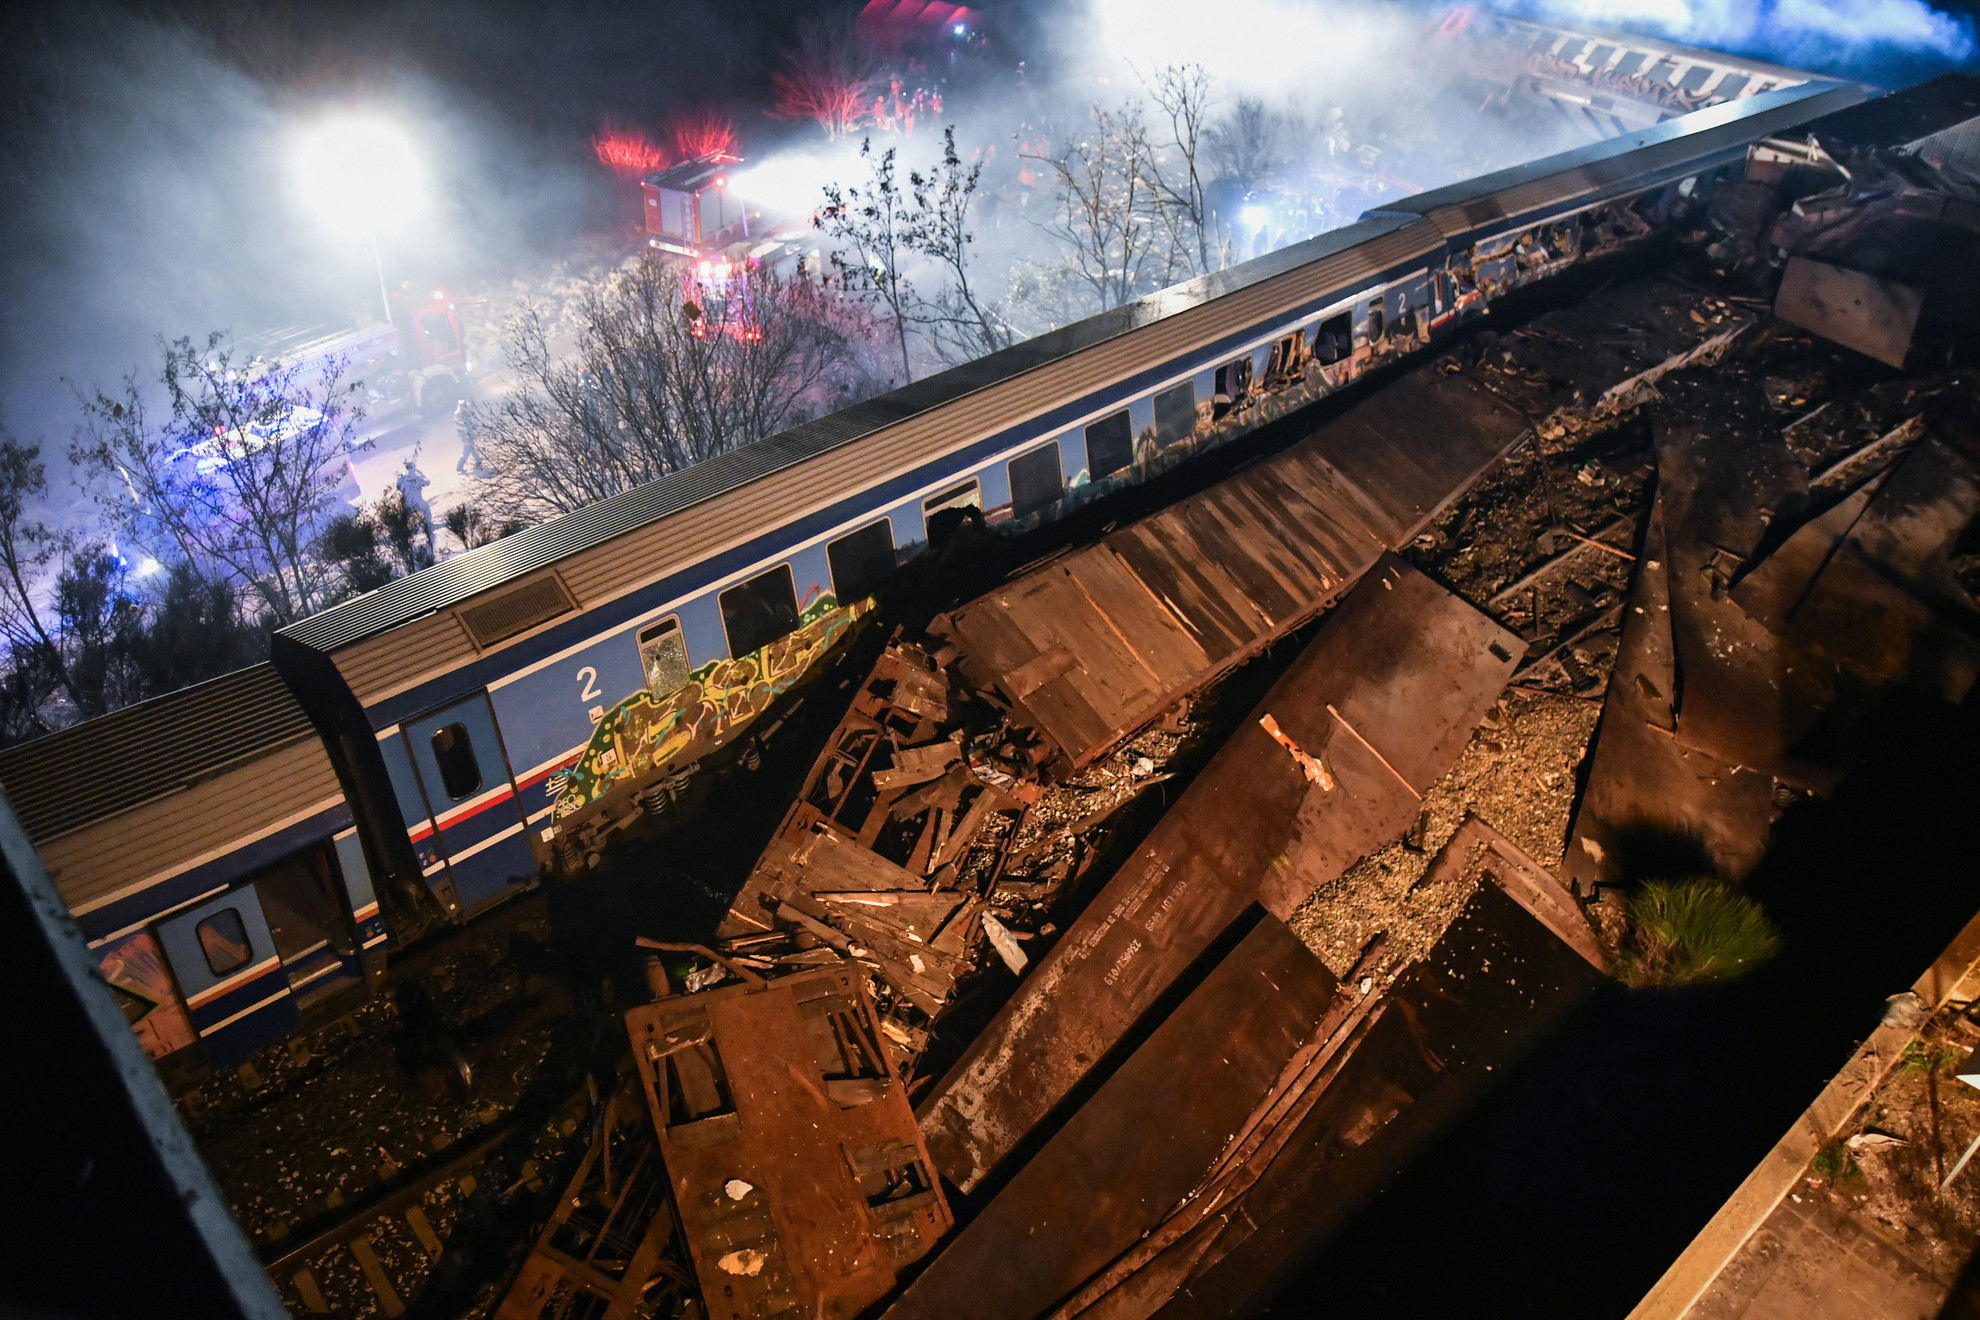 Súlyos vonatbaleset történt Görögországban február 28-án éjjel